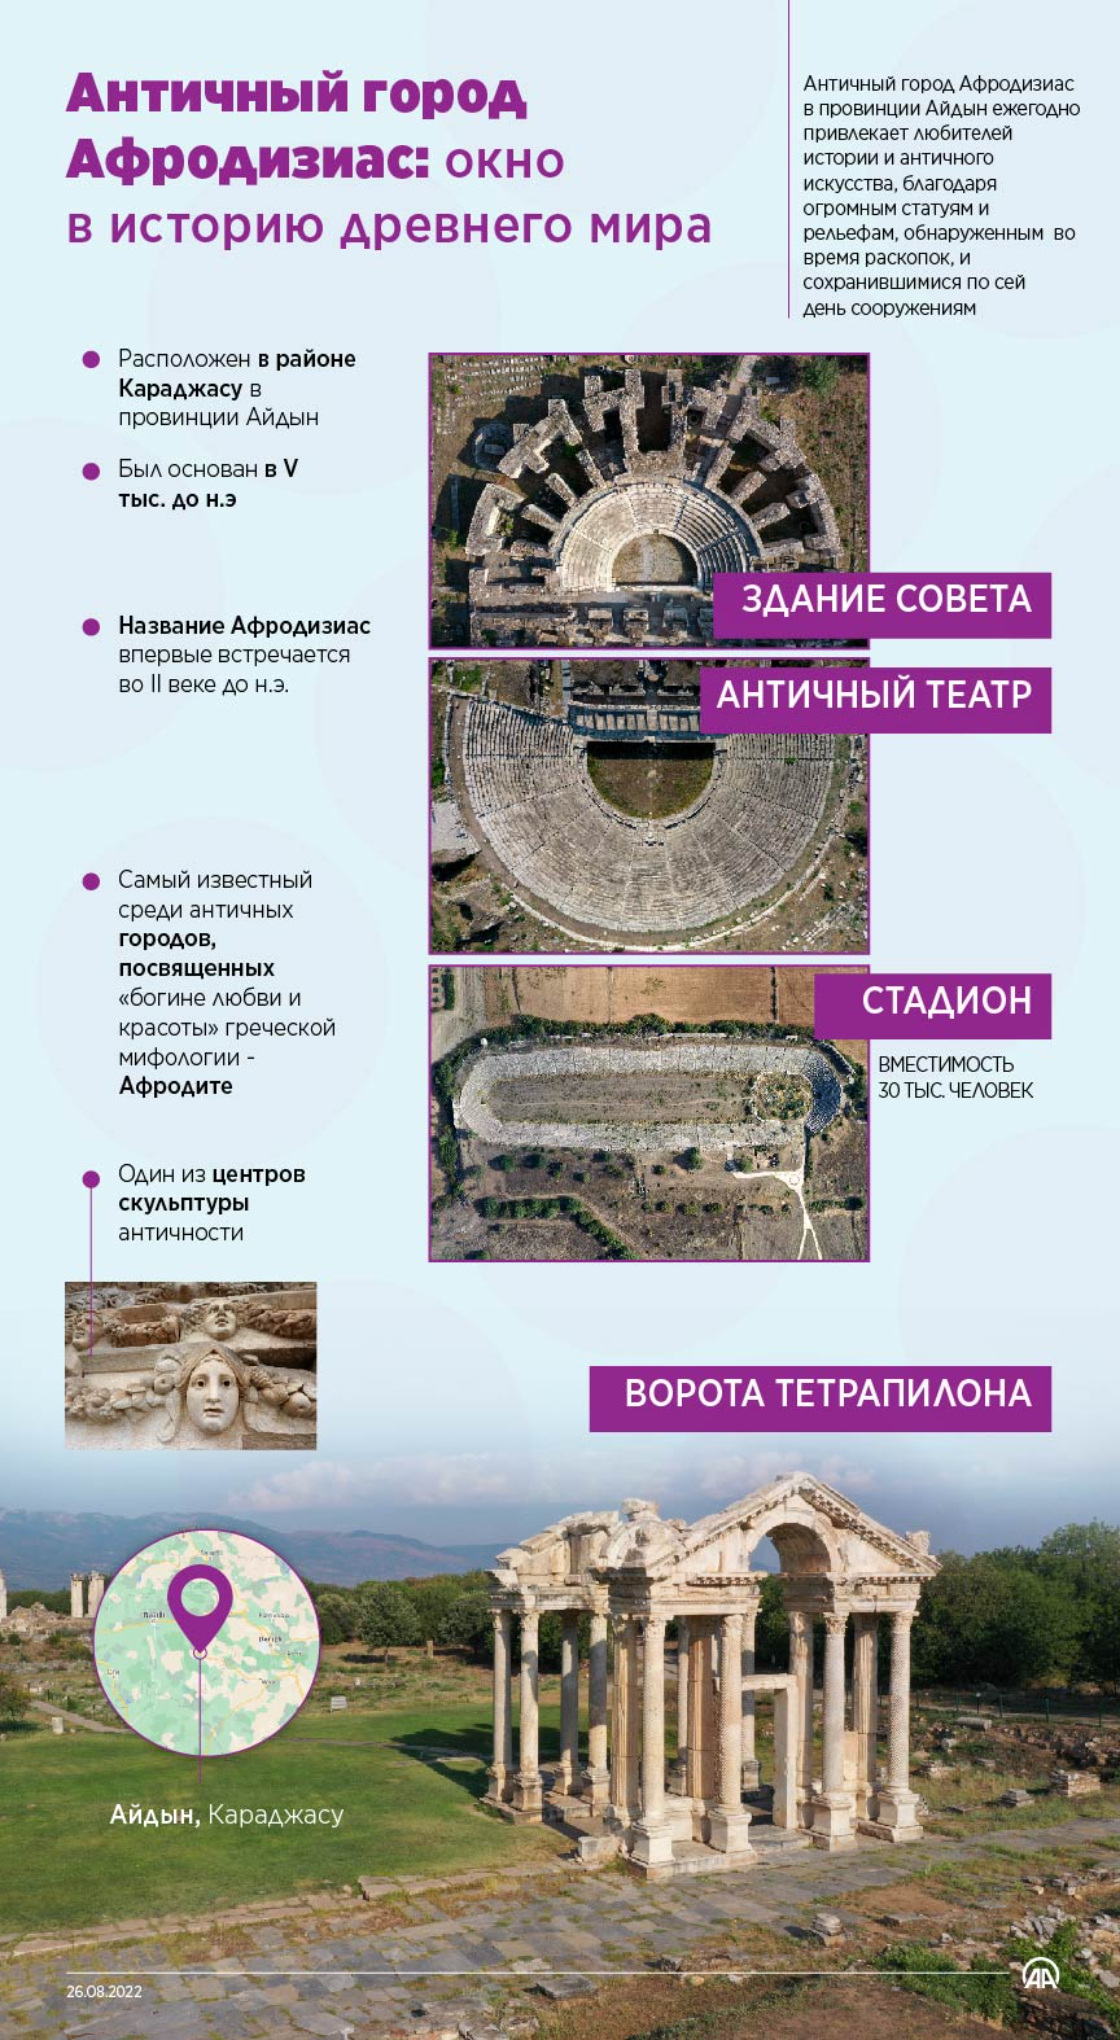 Античный город Афродизиас: окно в историю древнего мира